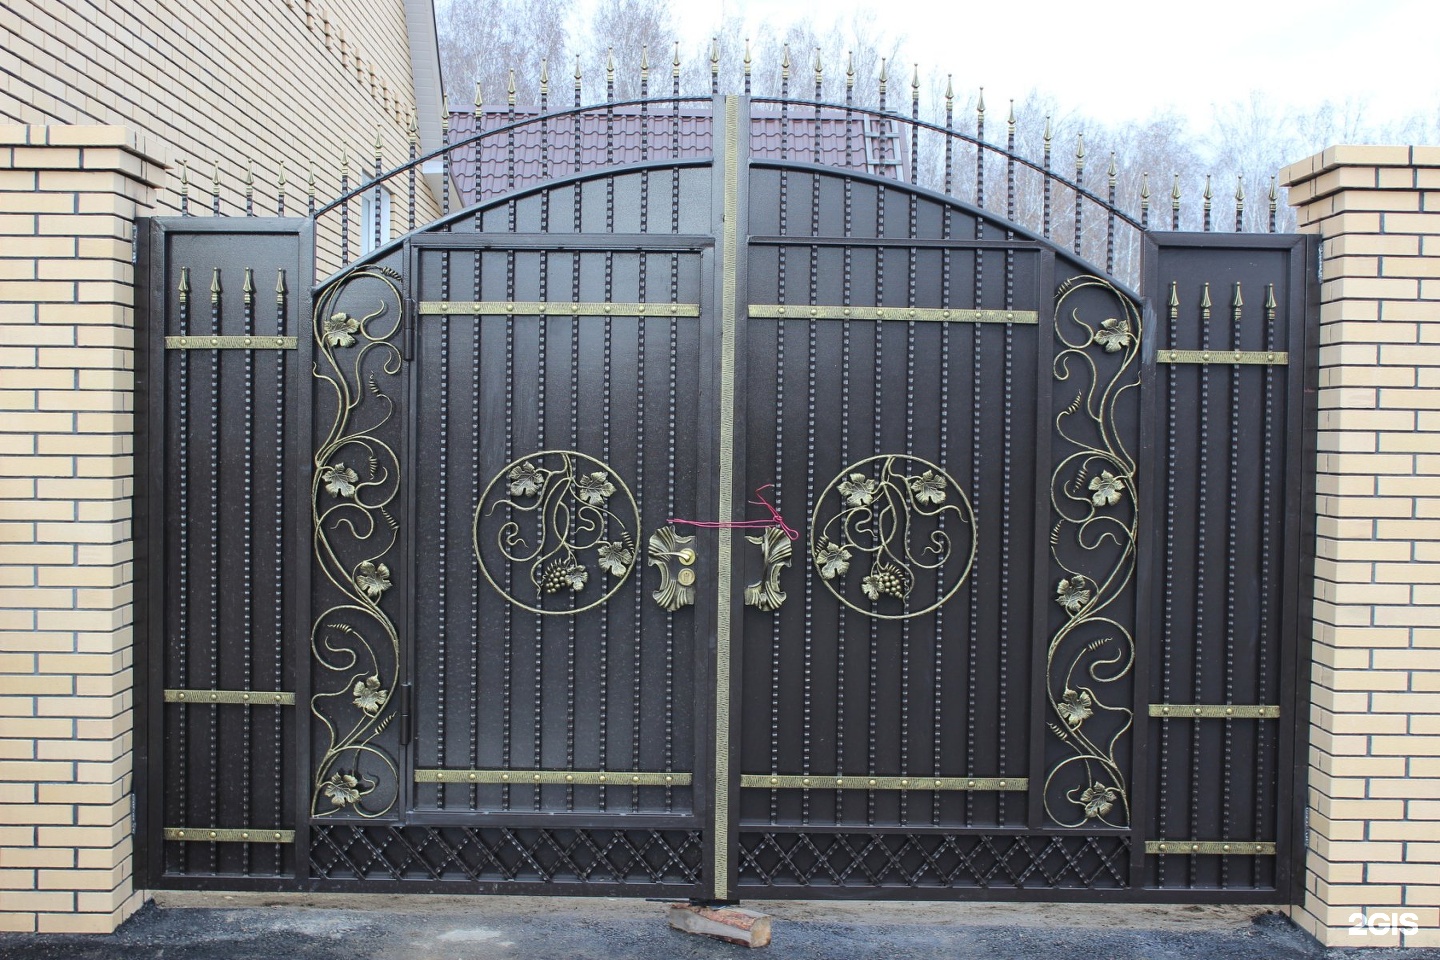 Ворота металлические кованые